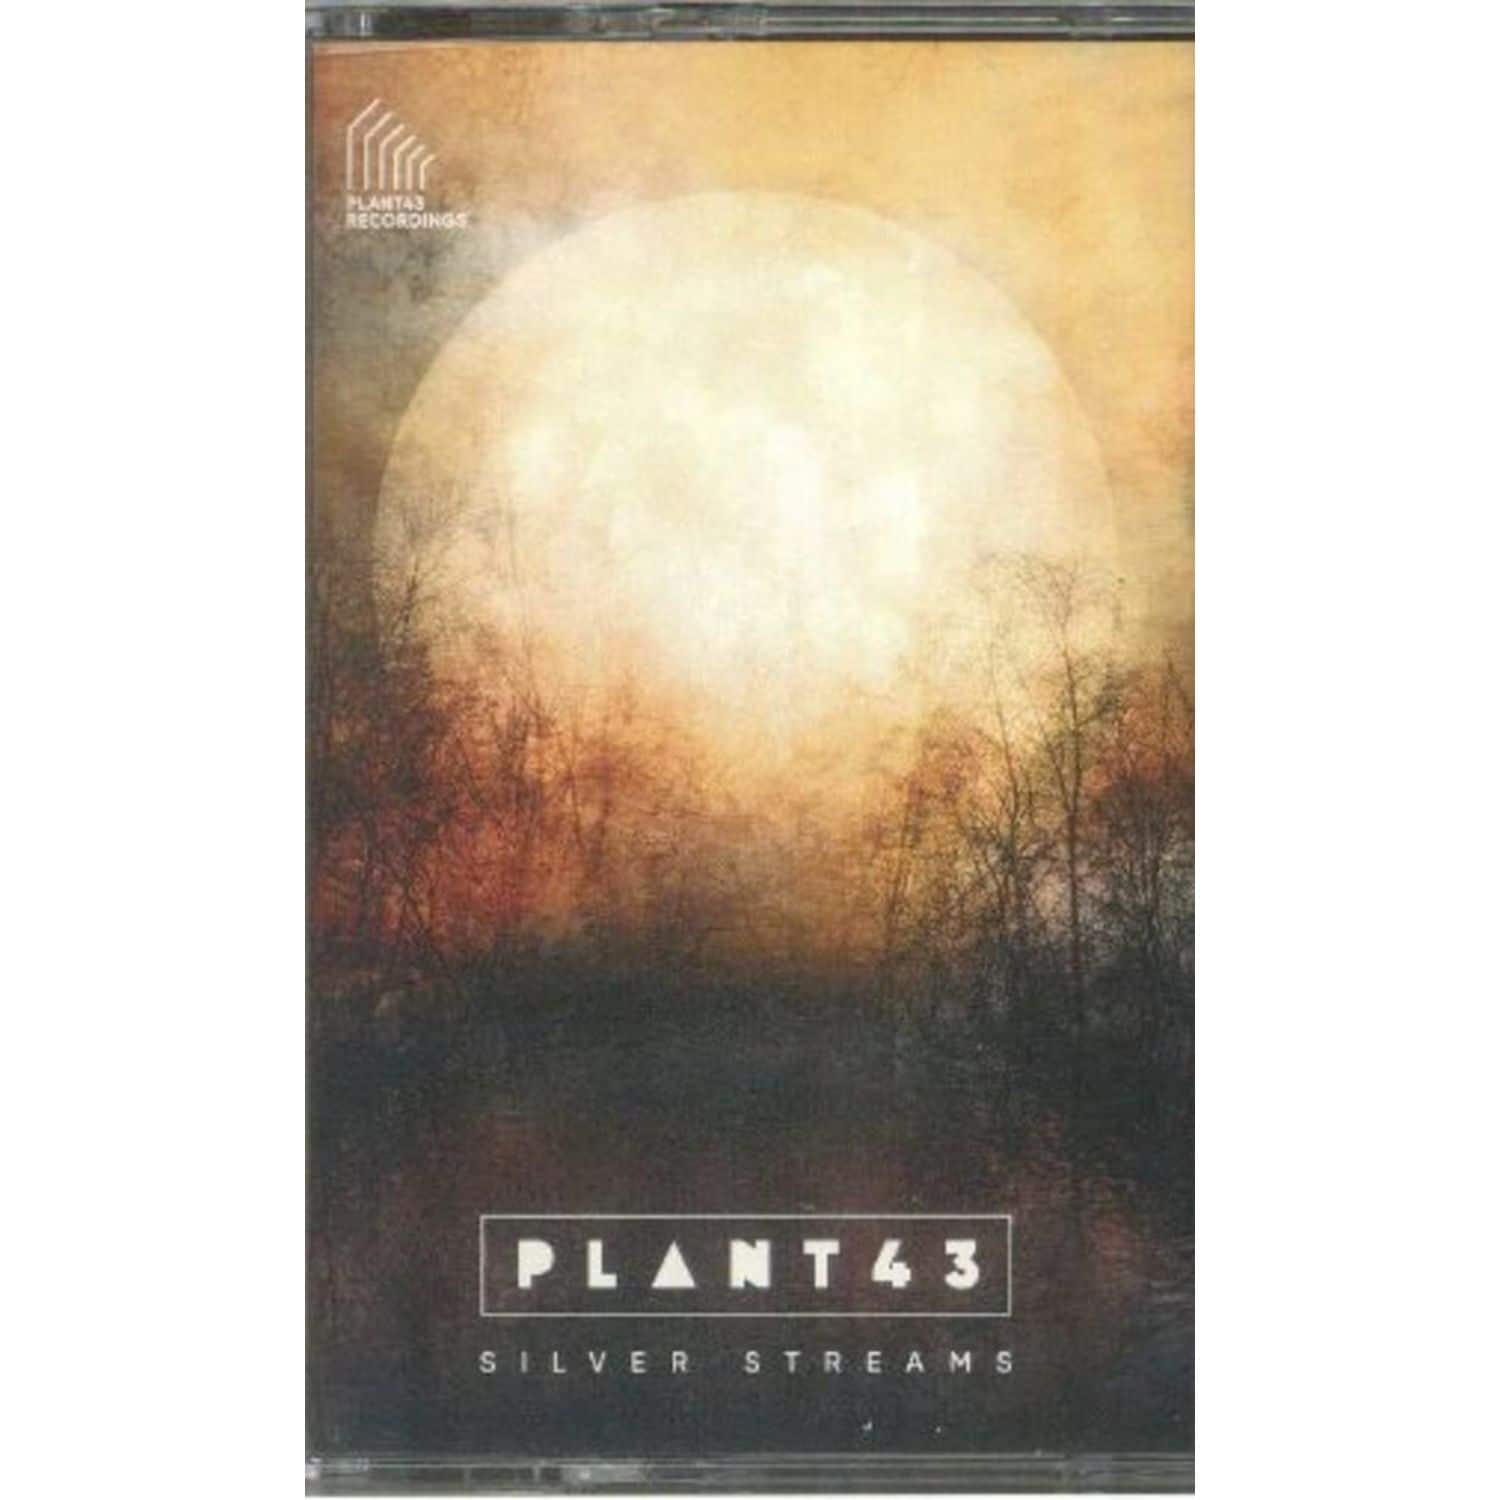 Plant43 - SILVER STREAMS 